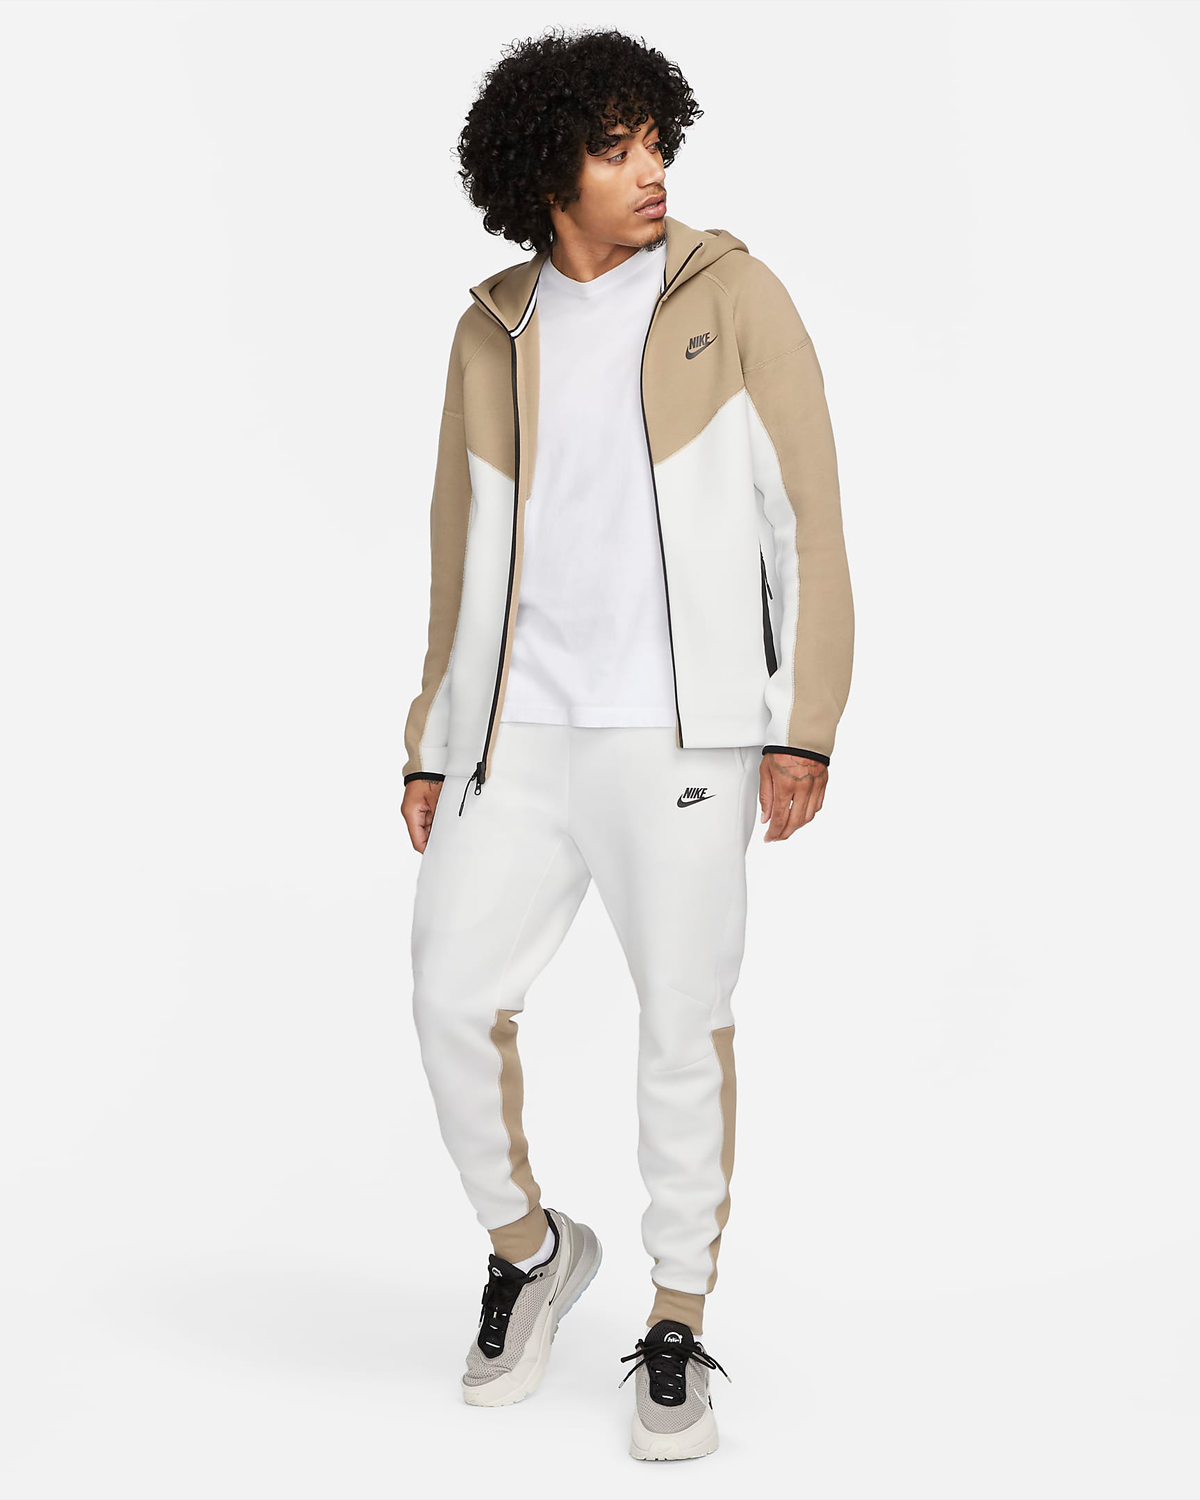 Nike-Tech-Fleece-Clothing-Summit-White-Khaki